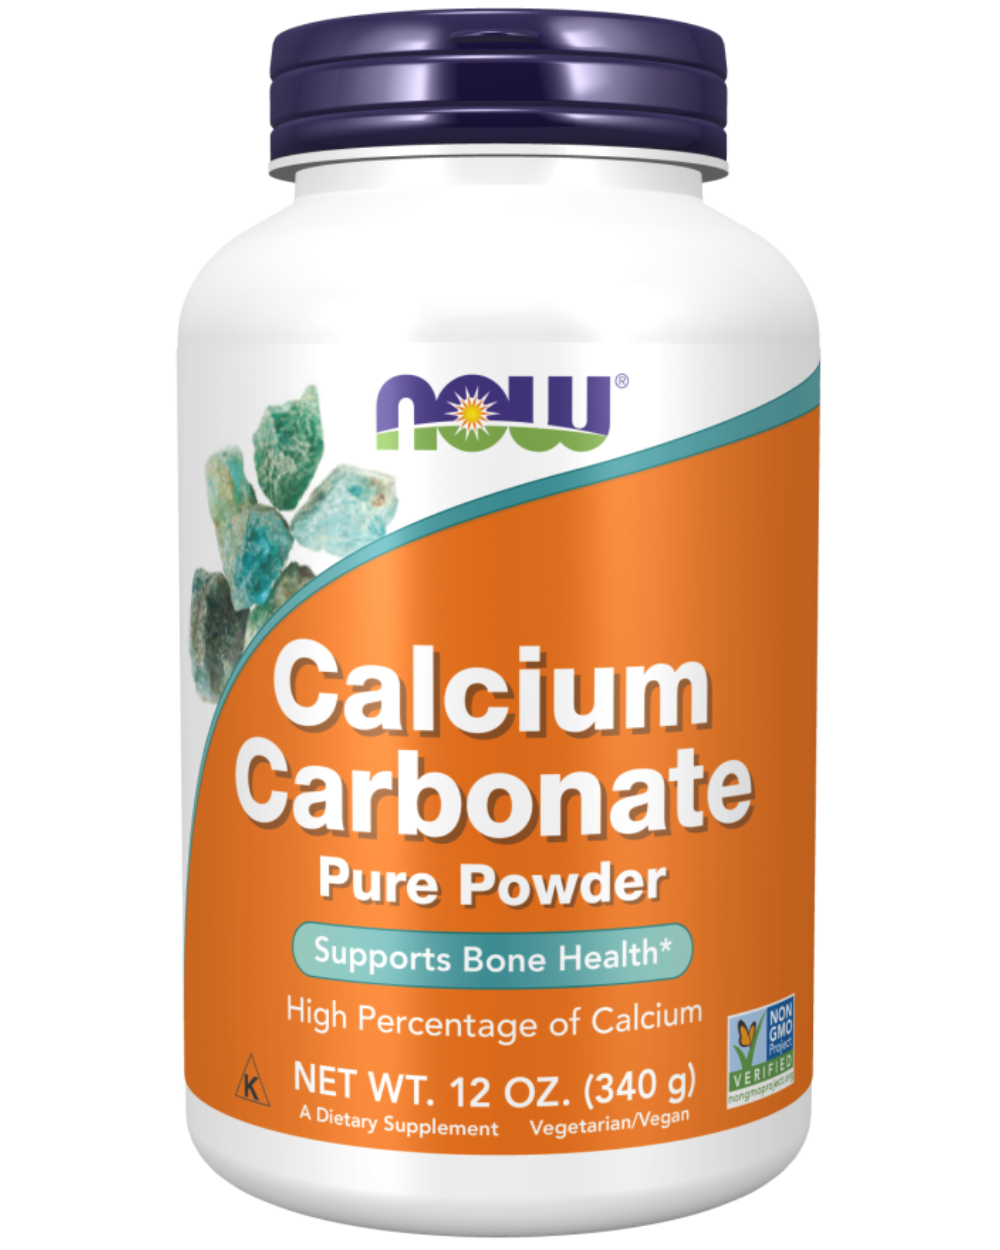 Calcuim Carbonate powder